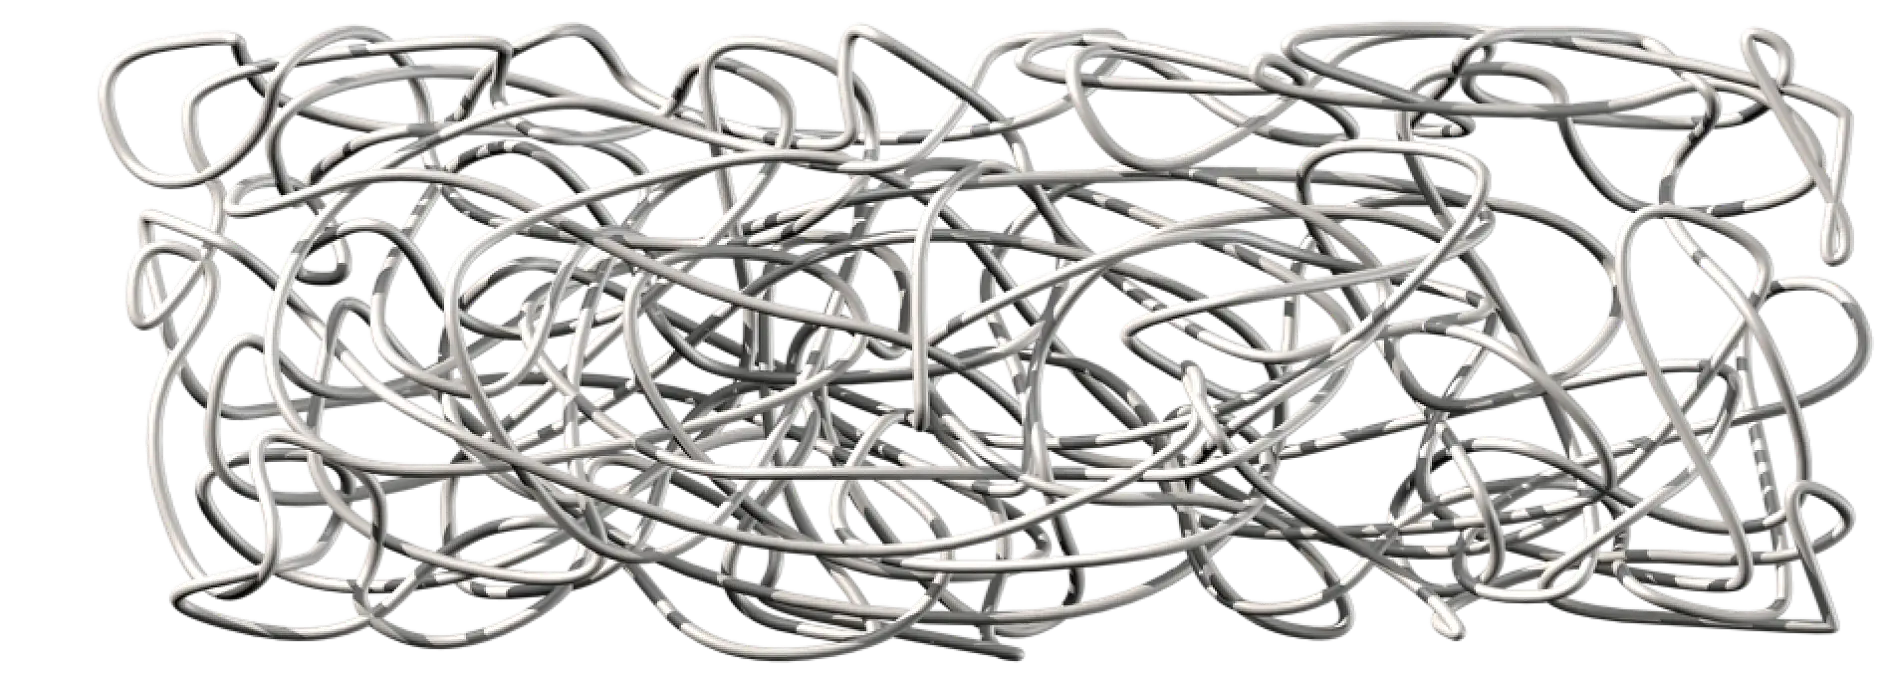 La gomma naturale è costituita da catene di polimeri molto lunghe attorcigliate, non connesse